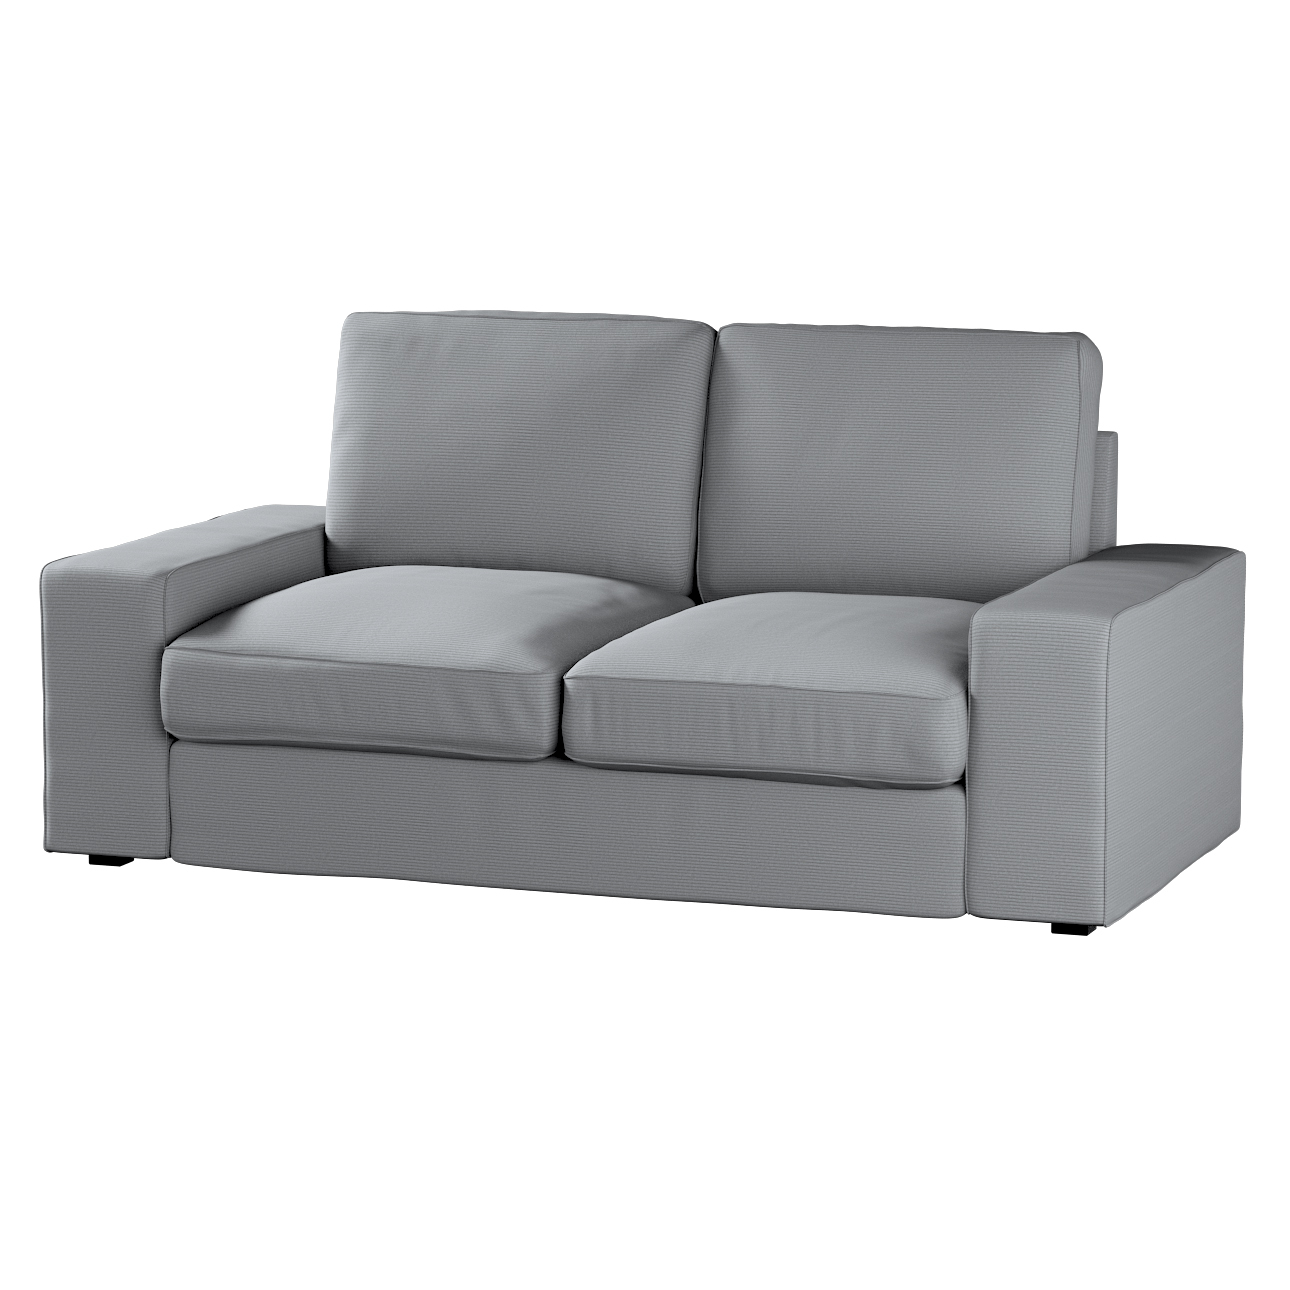 Bezug für Kivik 2-Sitzer Sofa, hellgrau, Bezug für Sofa Kivik 2-Sitzer, Man günstig online kaufen